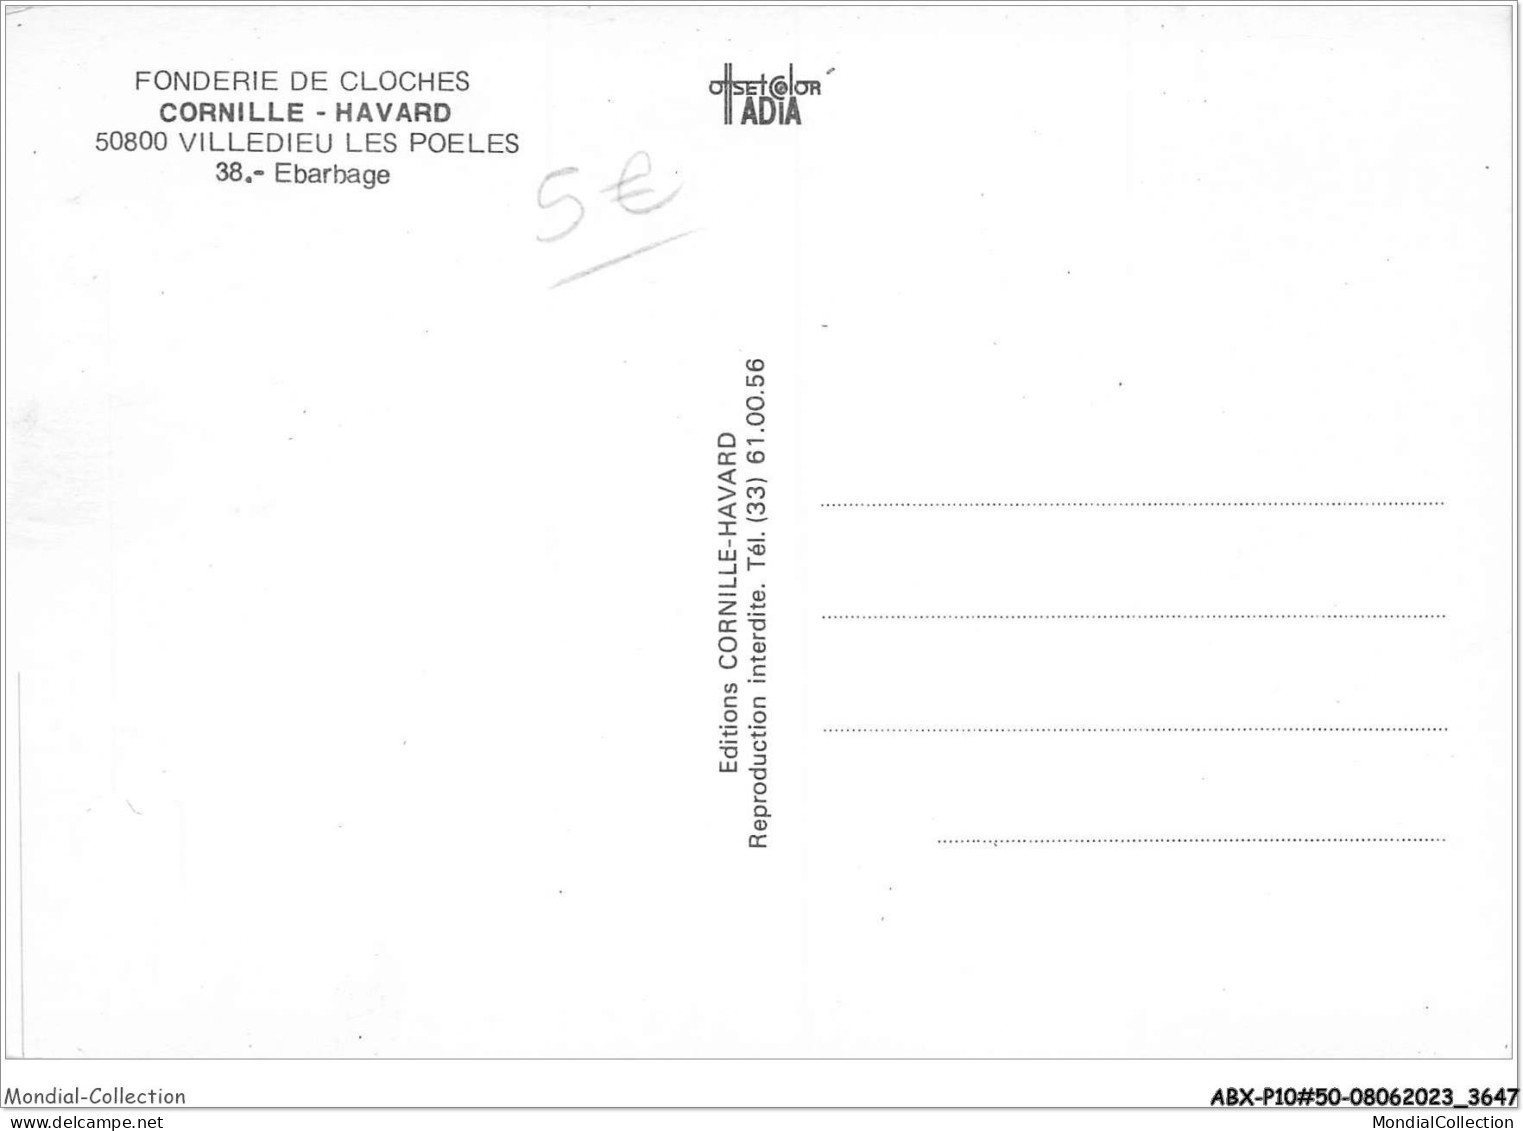 ABXP10-50-0817 - VILLEDIEU-LES-POELES - Fonderie De Cloche - Hebarhage  - Villedieu